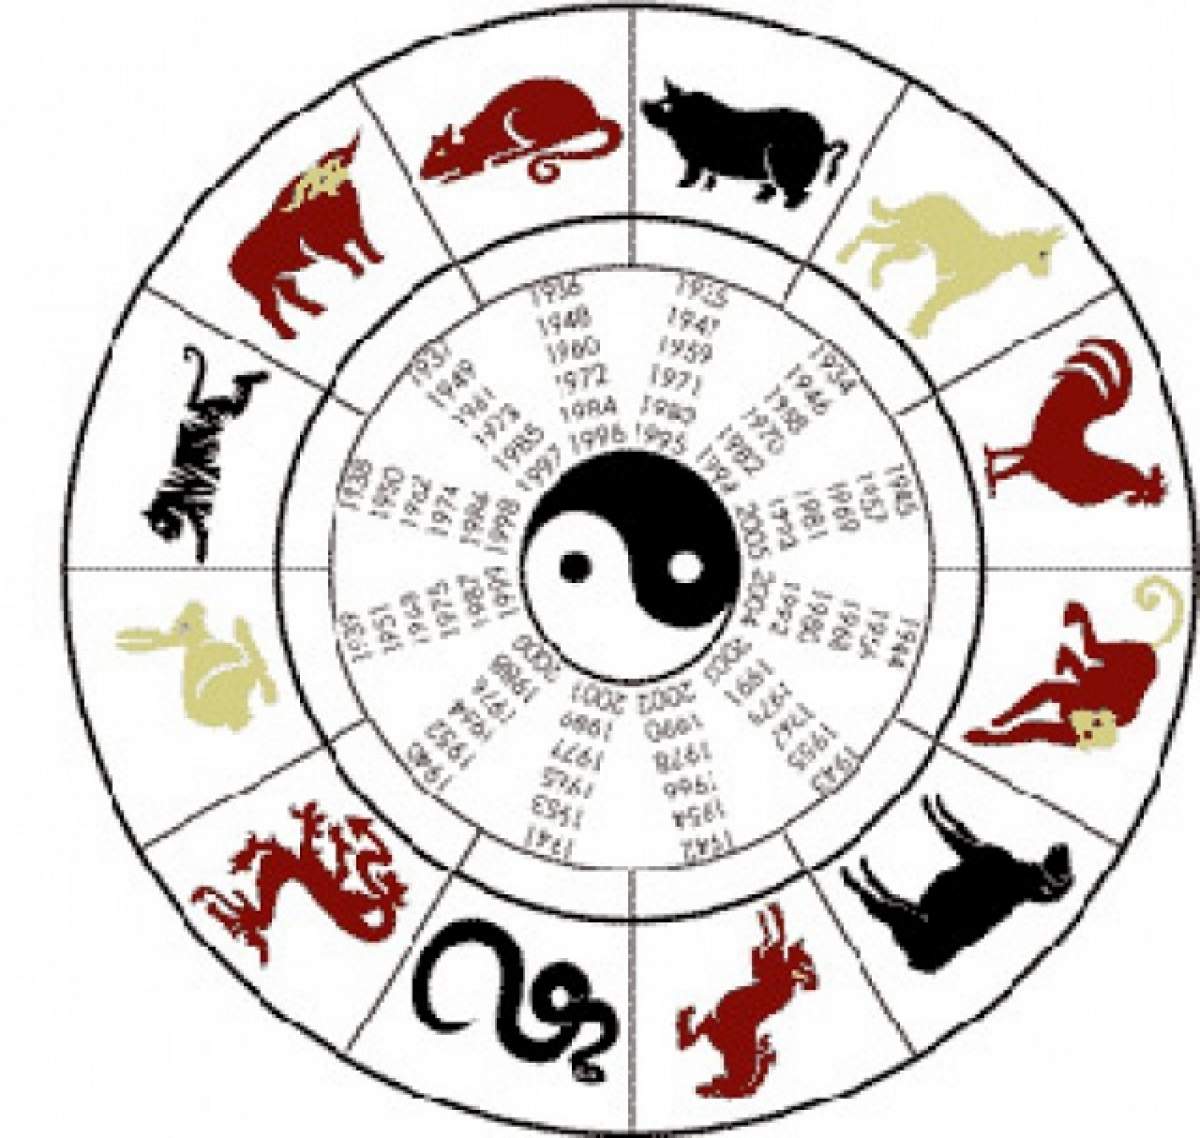 Cum sa-ţi exciţi partenerul, în funcţie de semnul zodiacal din horoscopul chinezesc?